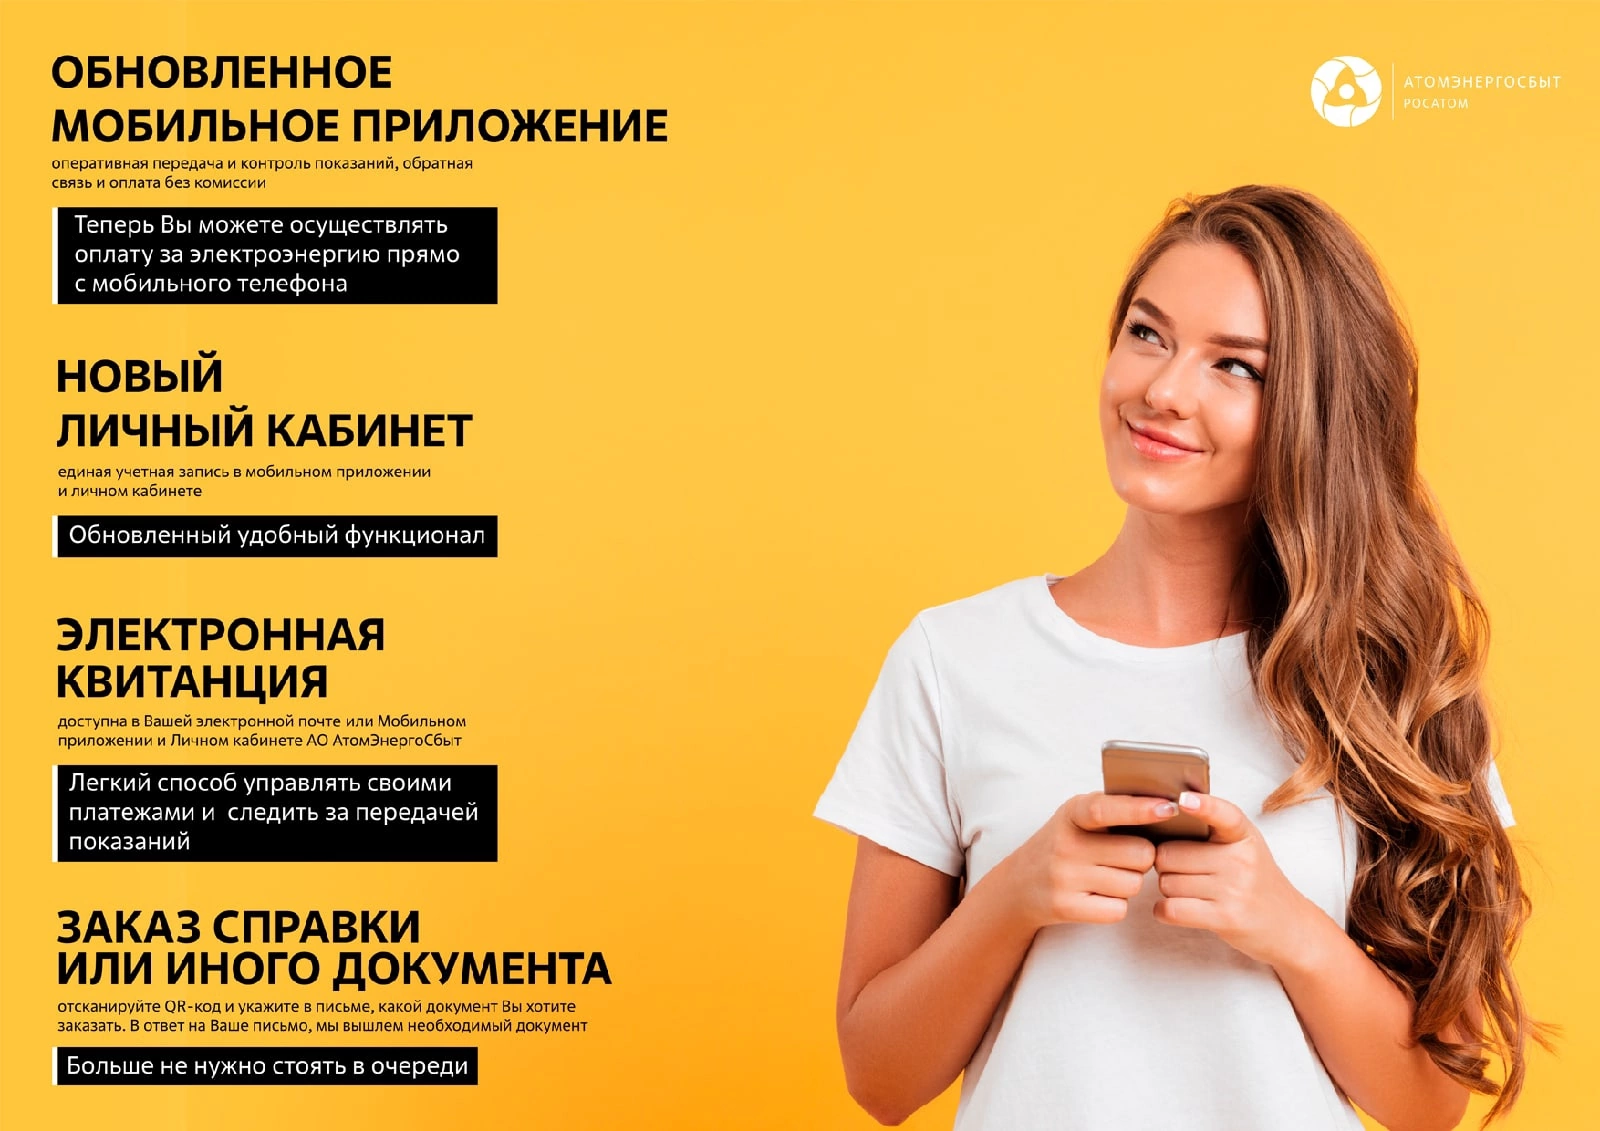 АО «АтомЭнергоСбыт» предлагает использовать современные цифровые сервисы: личный кабинет, мобильное приложение, электронная квитанция..